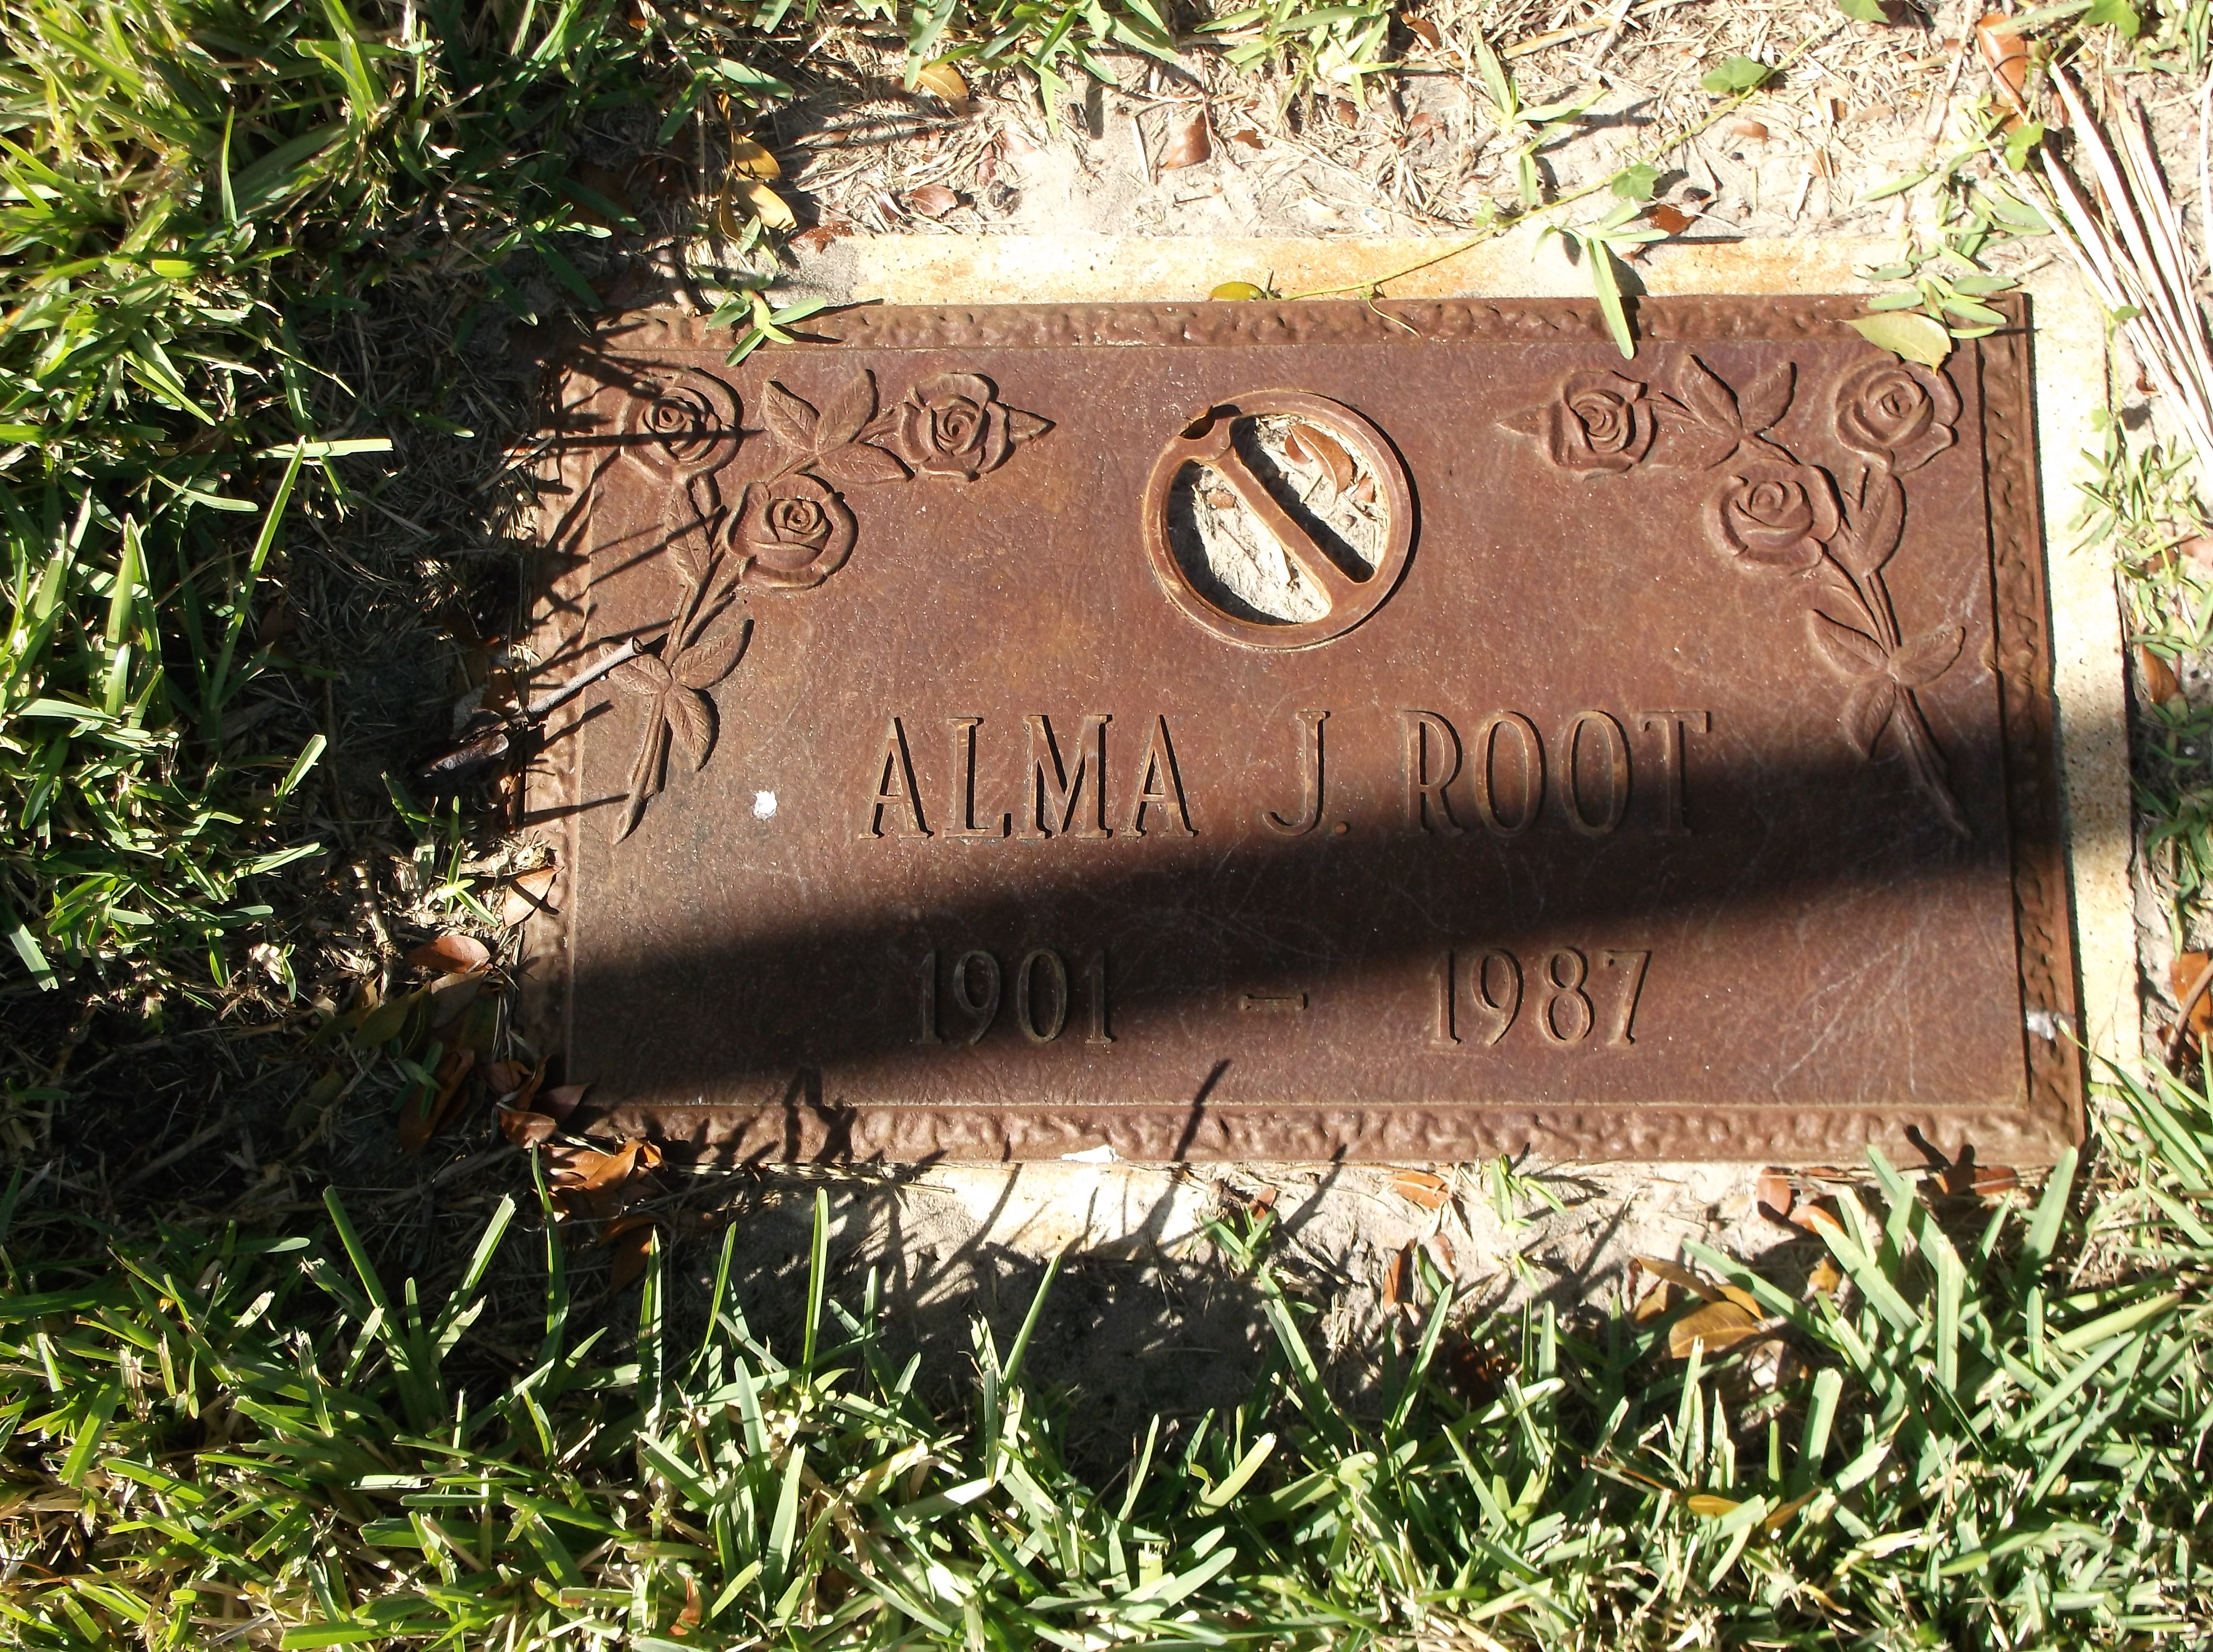 Alma J Root